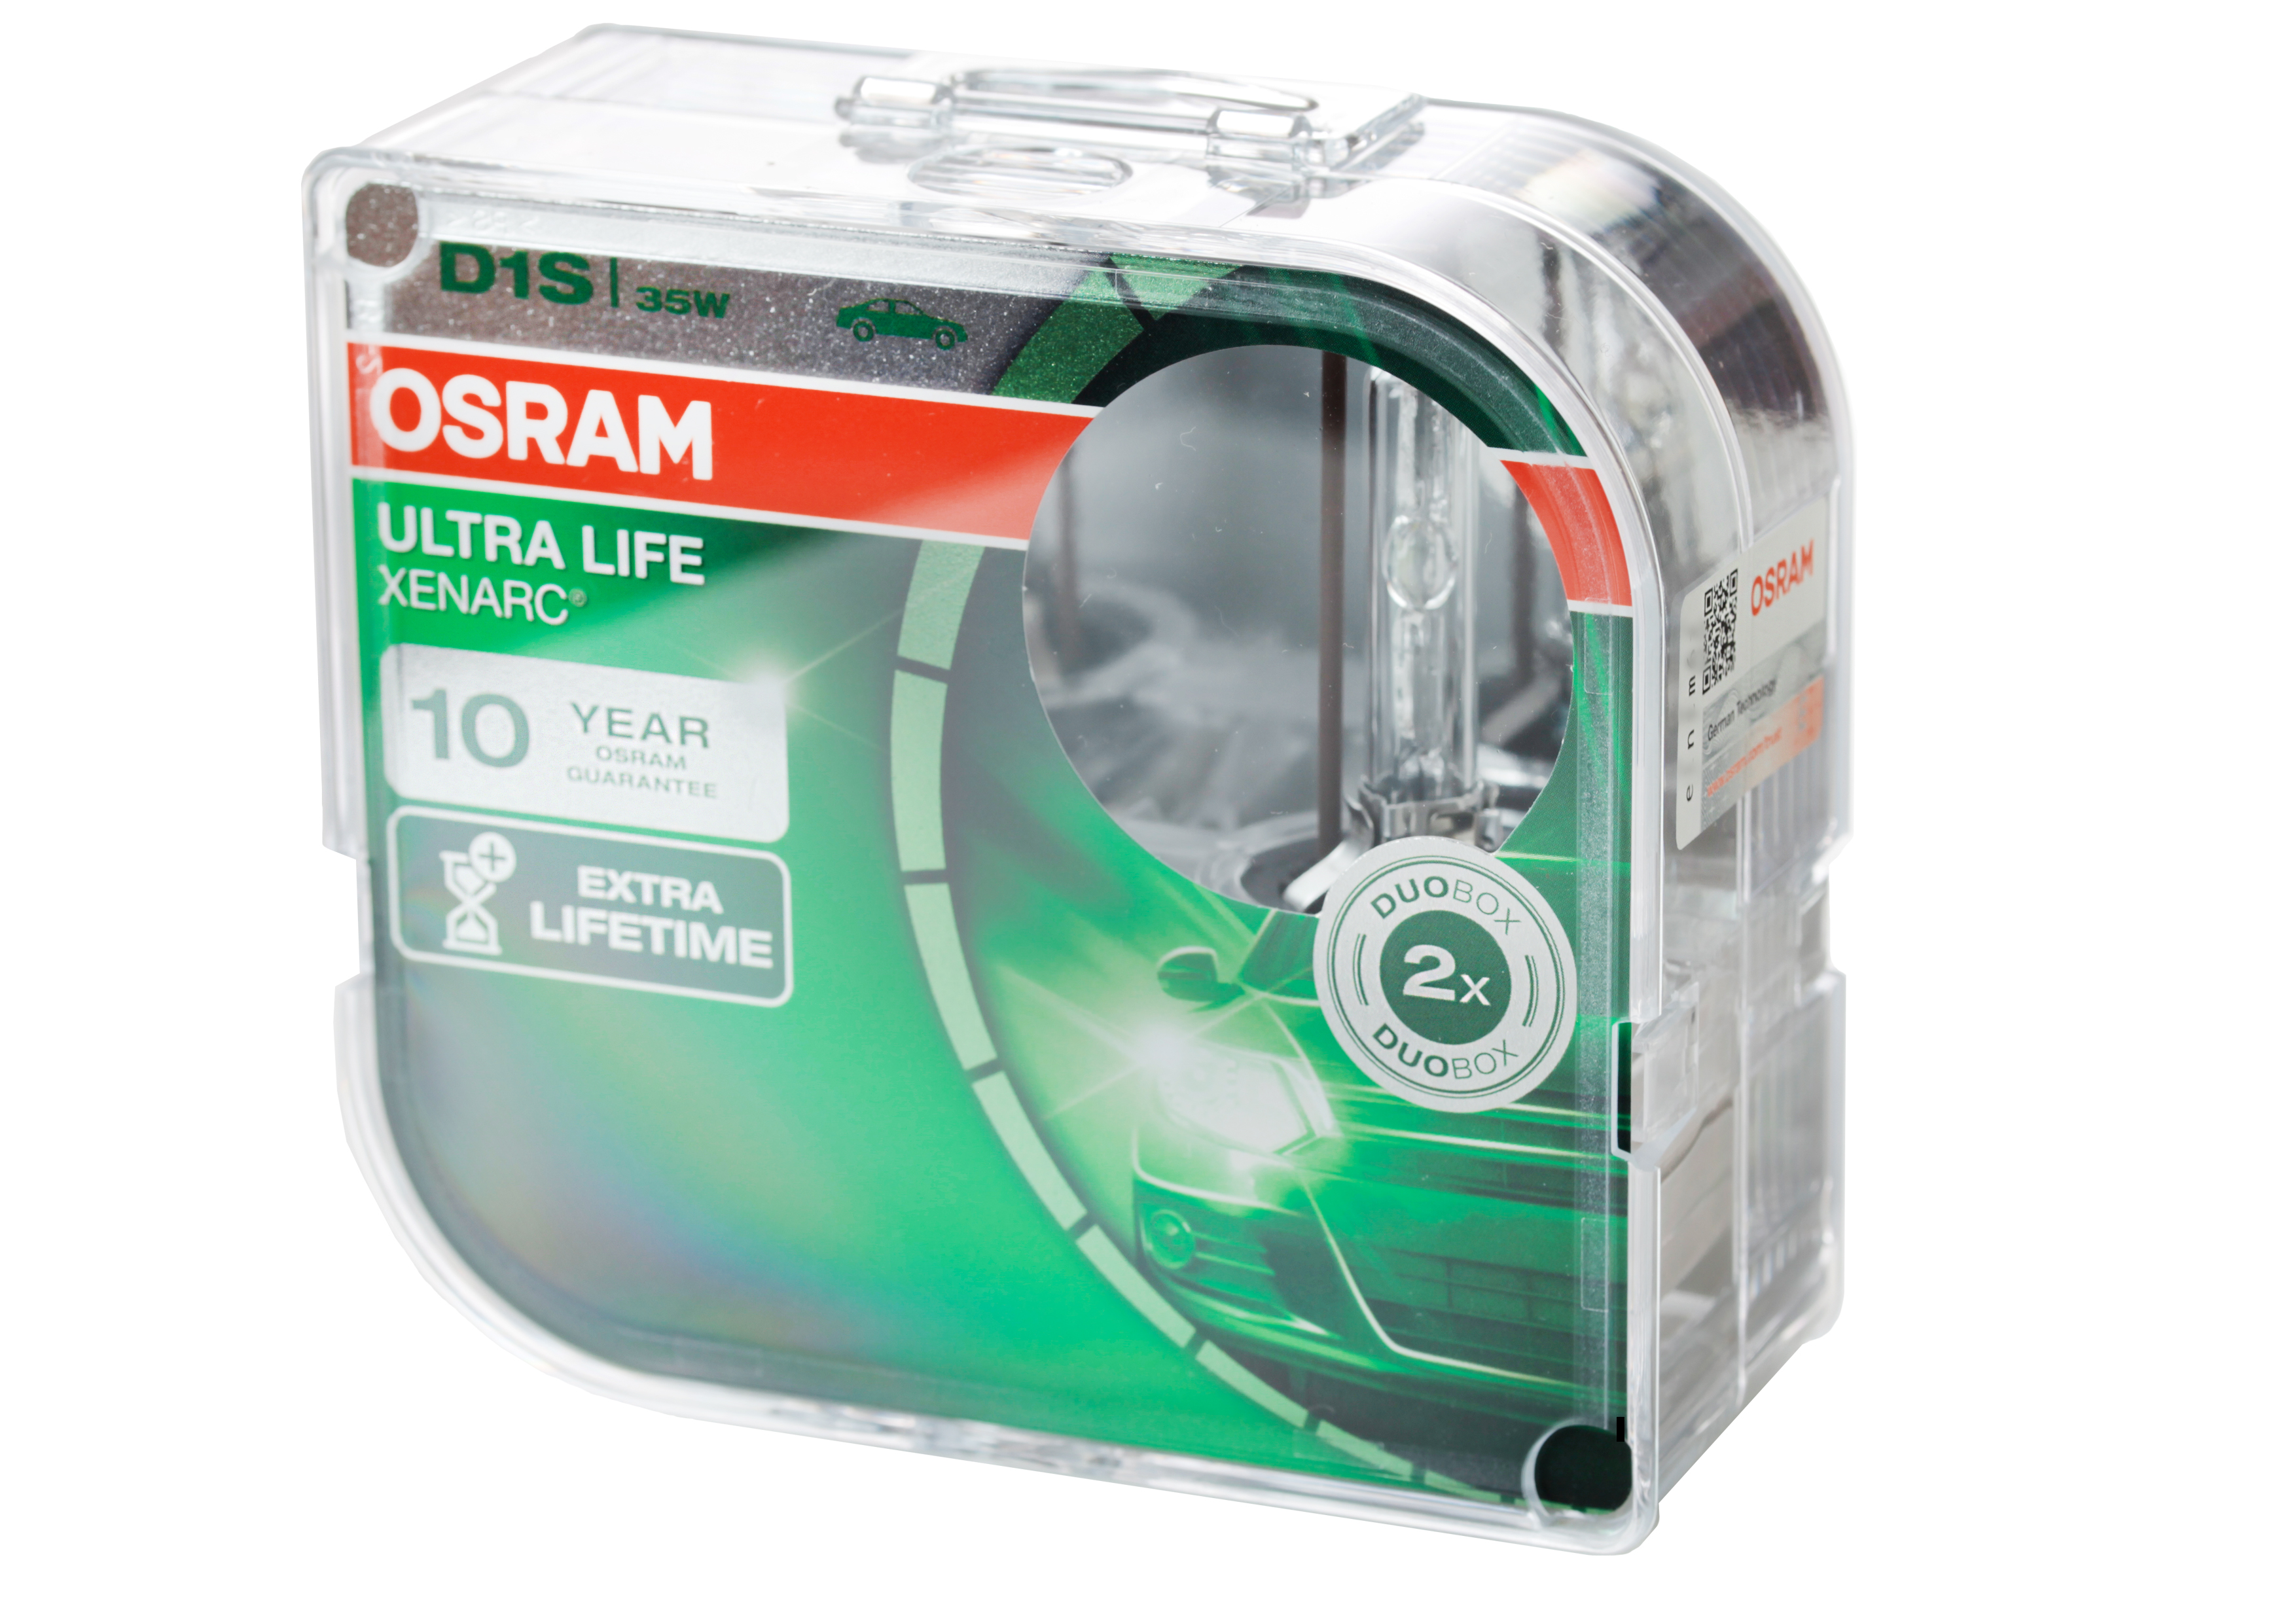 Osram D1S 66140 ULT XENARC® ULTRA LIFE Extra Lifetime DuoBox (2 Stück), LKW Beleuchtung